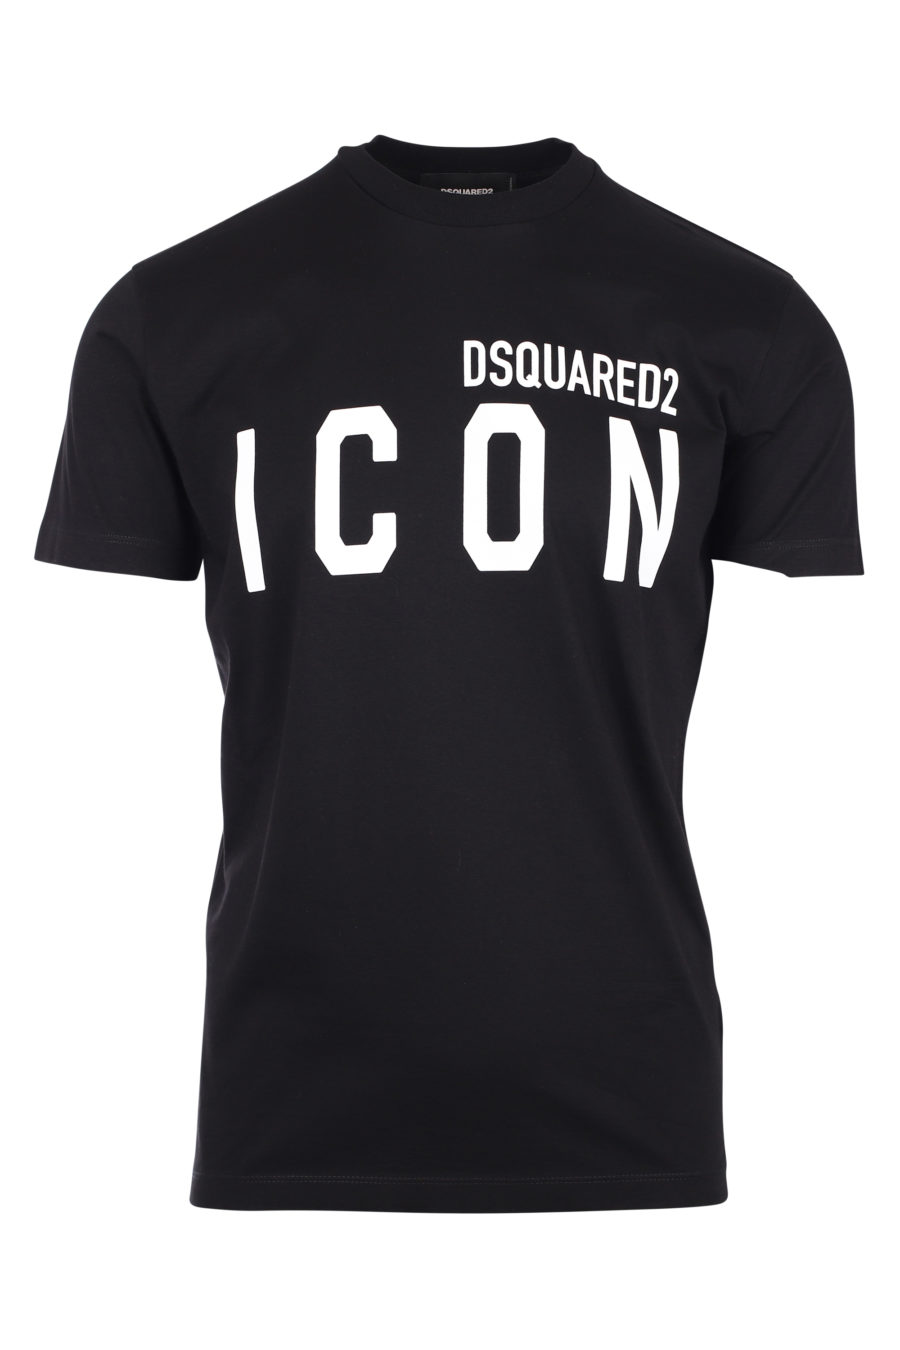 Camiseta negra con logo "icon" - IMG 9787